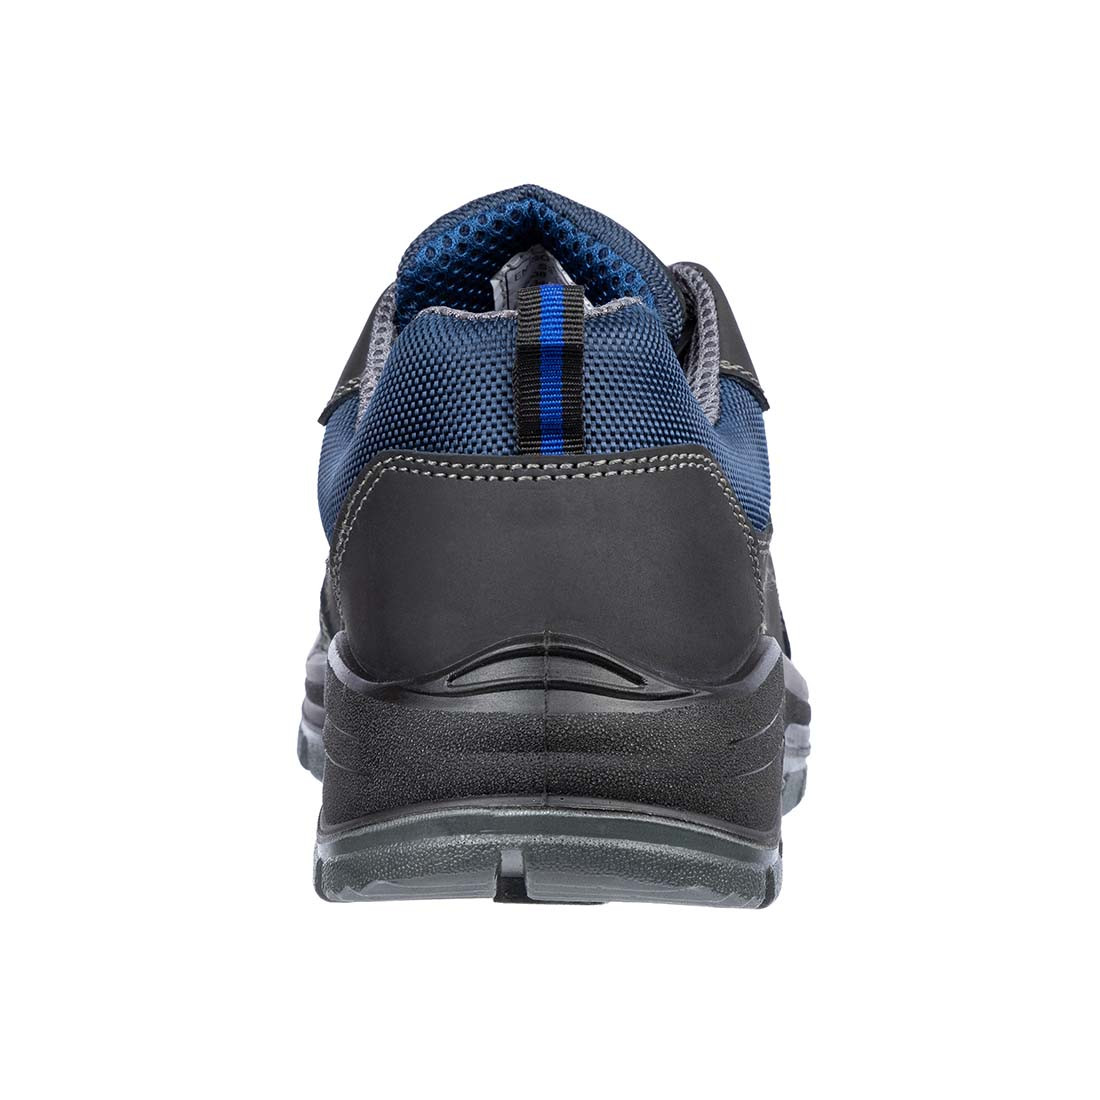 Zapatos de protección SAFE LOW S3 - Calzado de protección